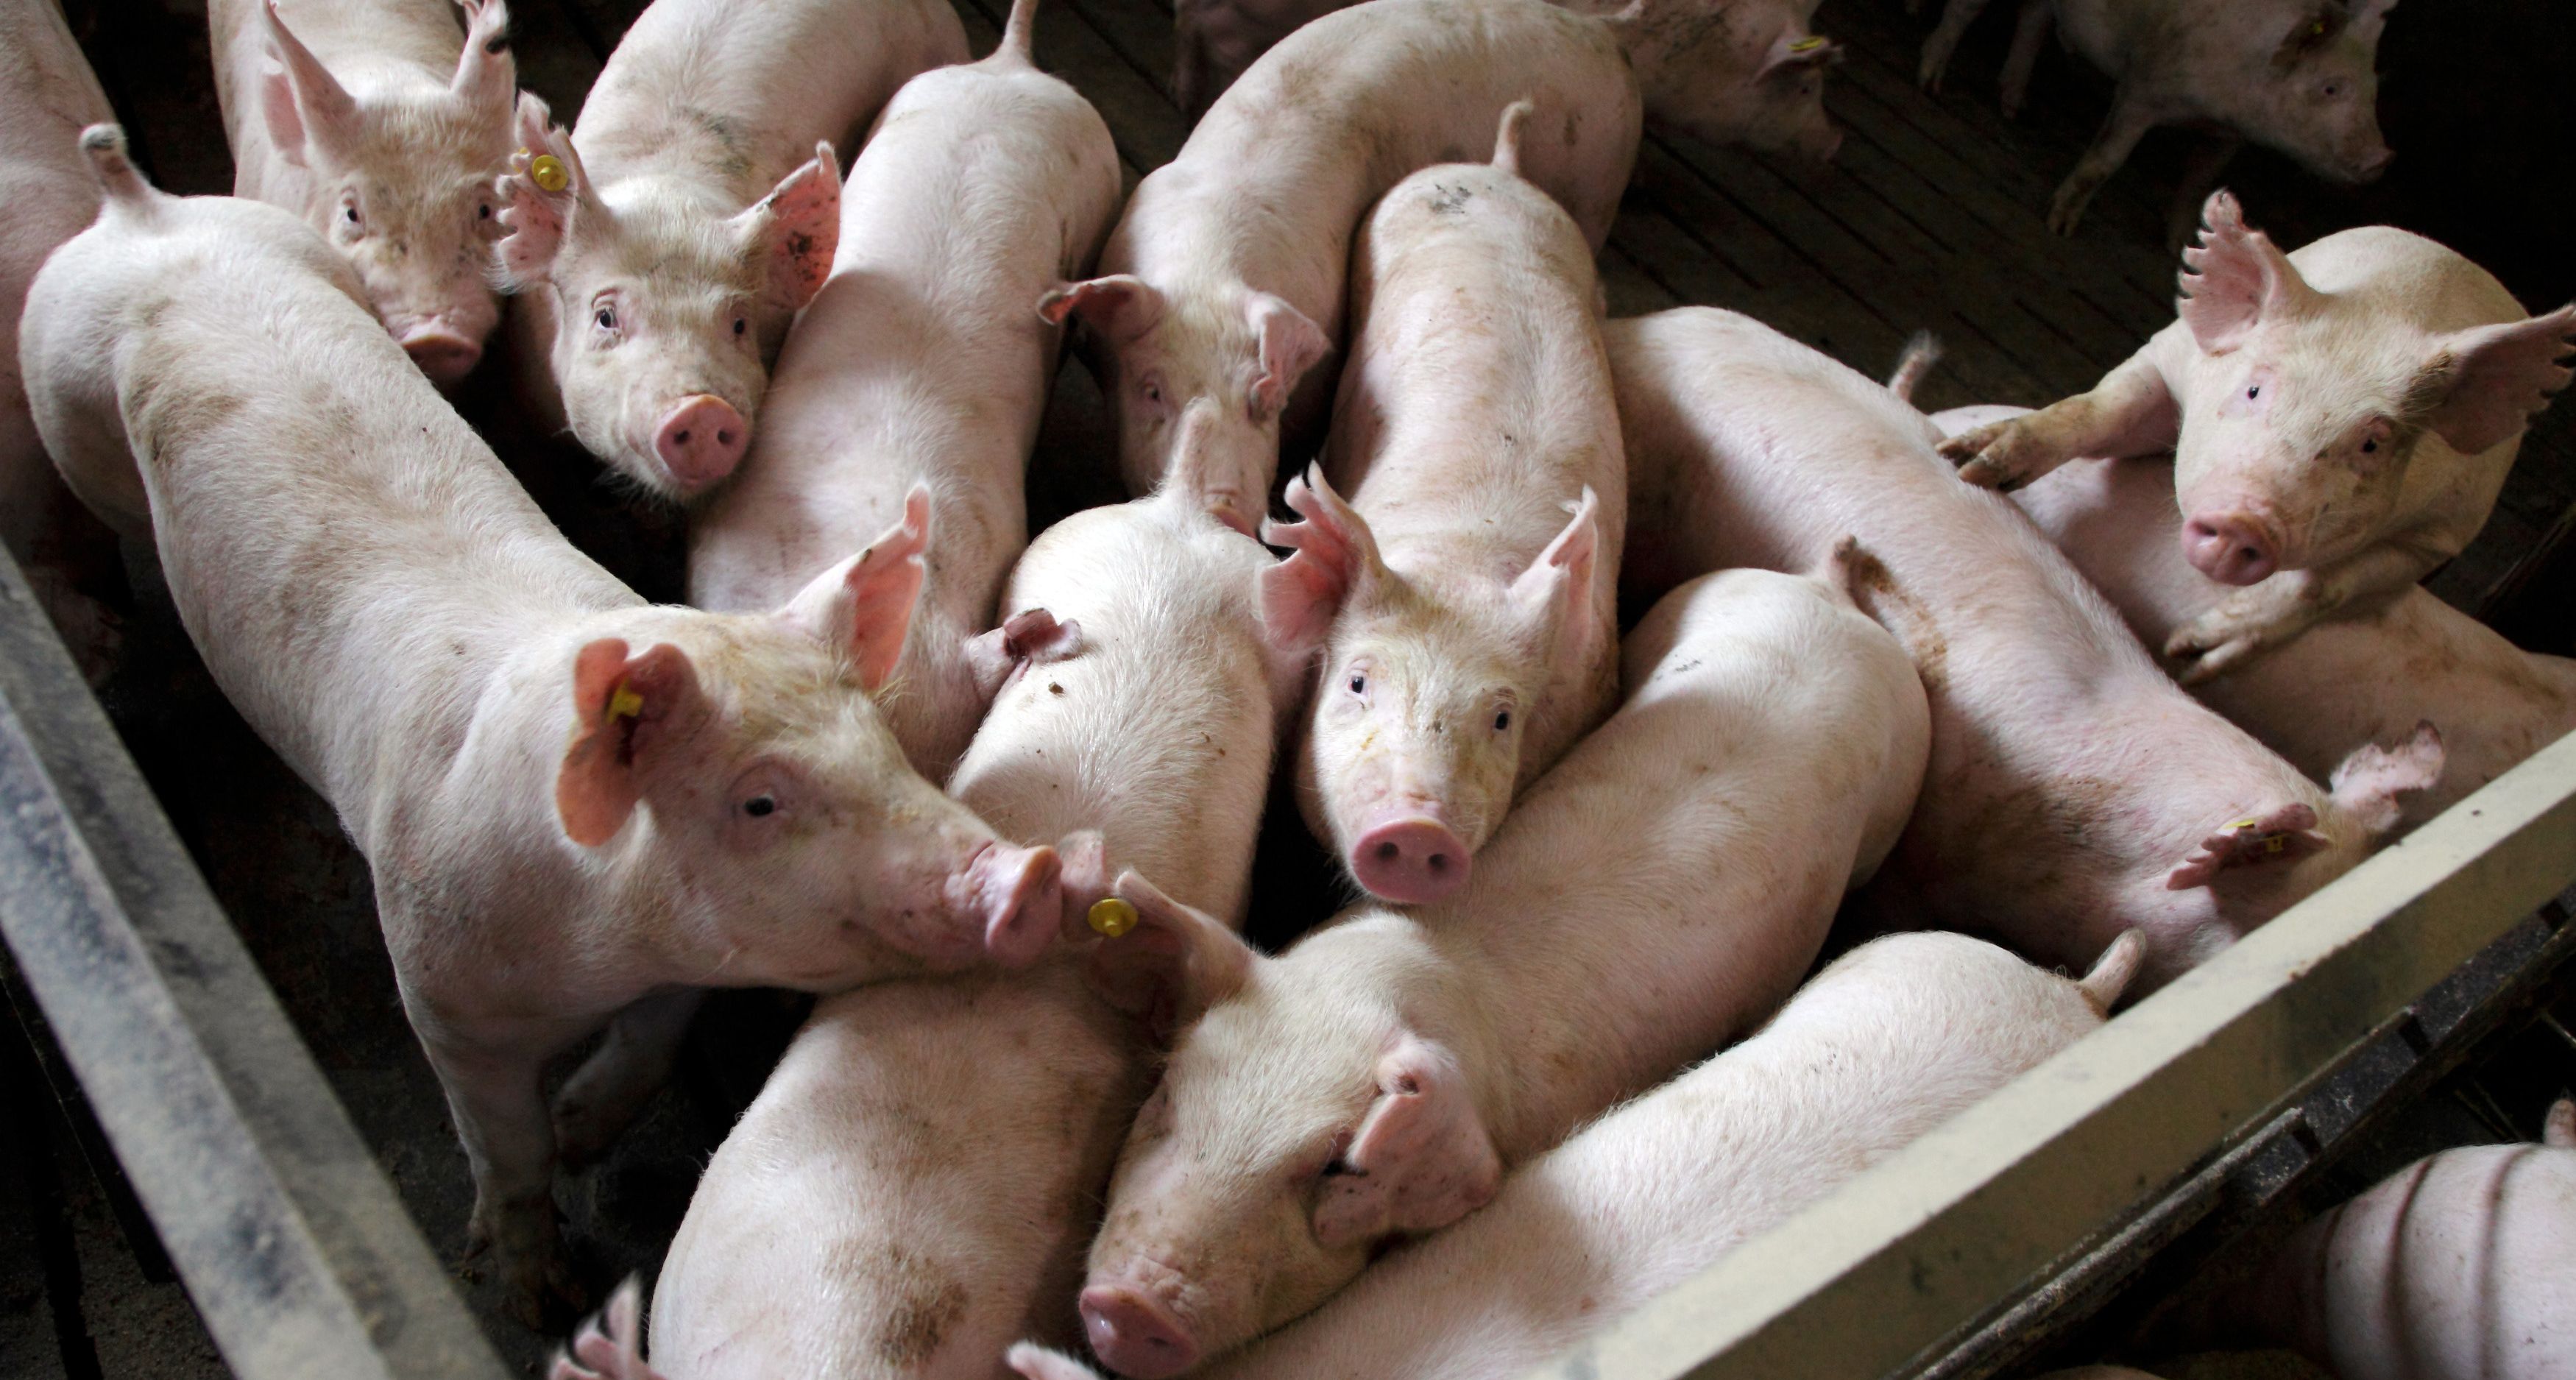 Африканская чума свиней добралась к "мясным" областям Украины: на Полтавщине и Кировоградщине инфекционисты обнаружили вспышку эпидемии животных